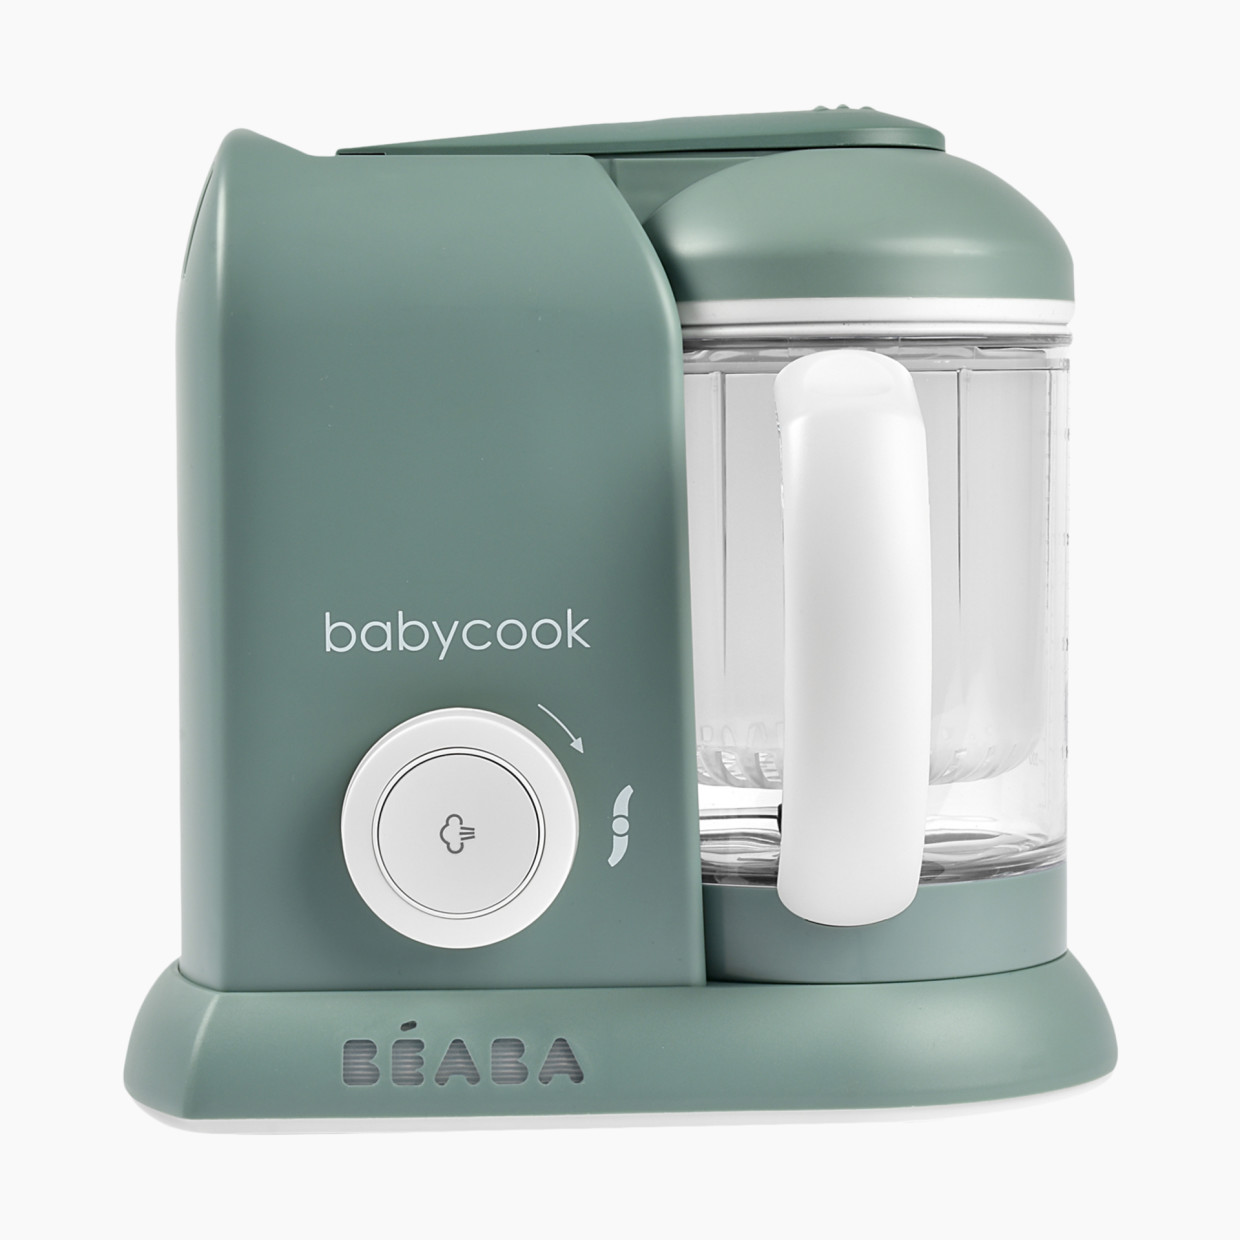 Beaba Babycook Solo Baby Food Maker - Eucalyptus.